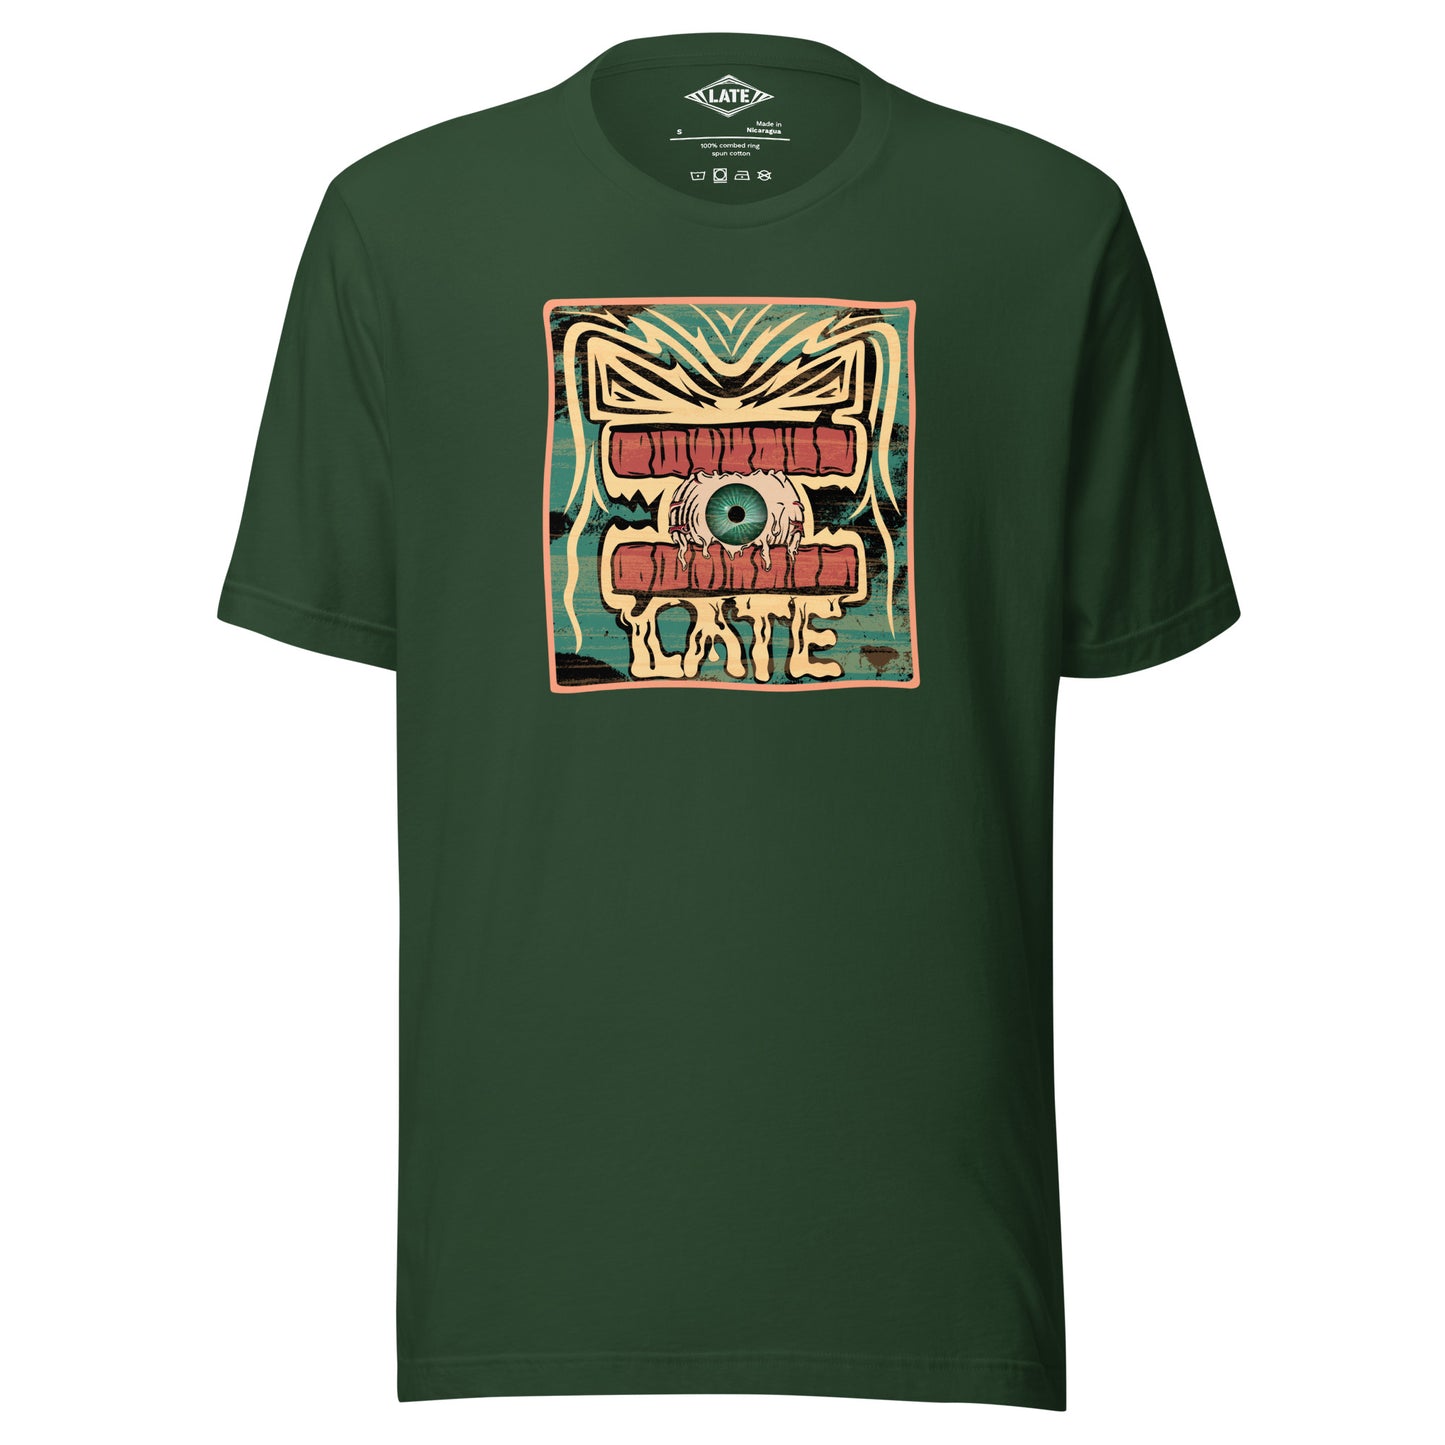 T-shirt rétro skateboarding, design couleur délavée, années 70,80, original dent et oeil skate, tee-shirt unisexe vert foret